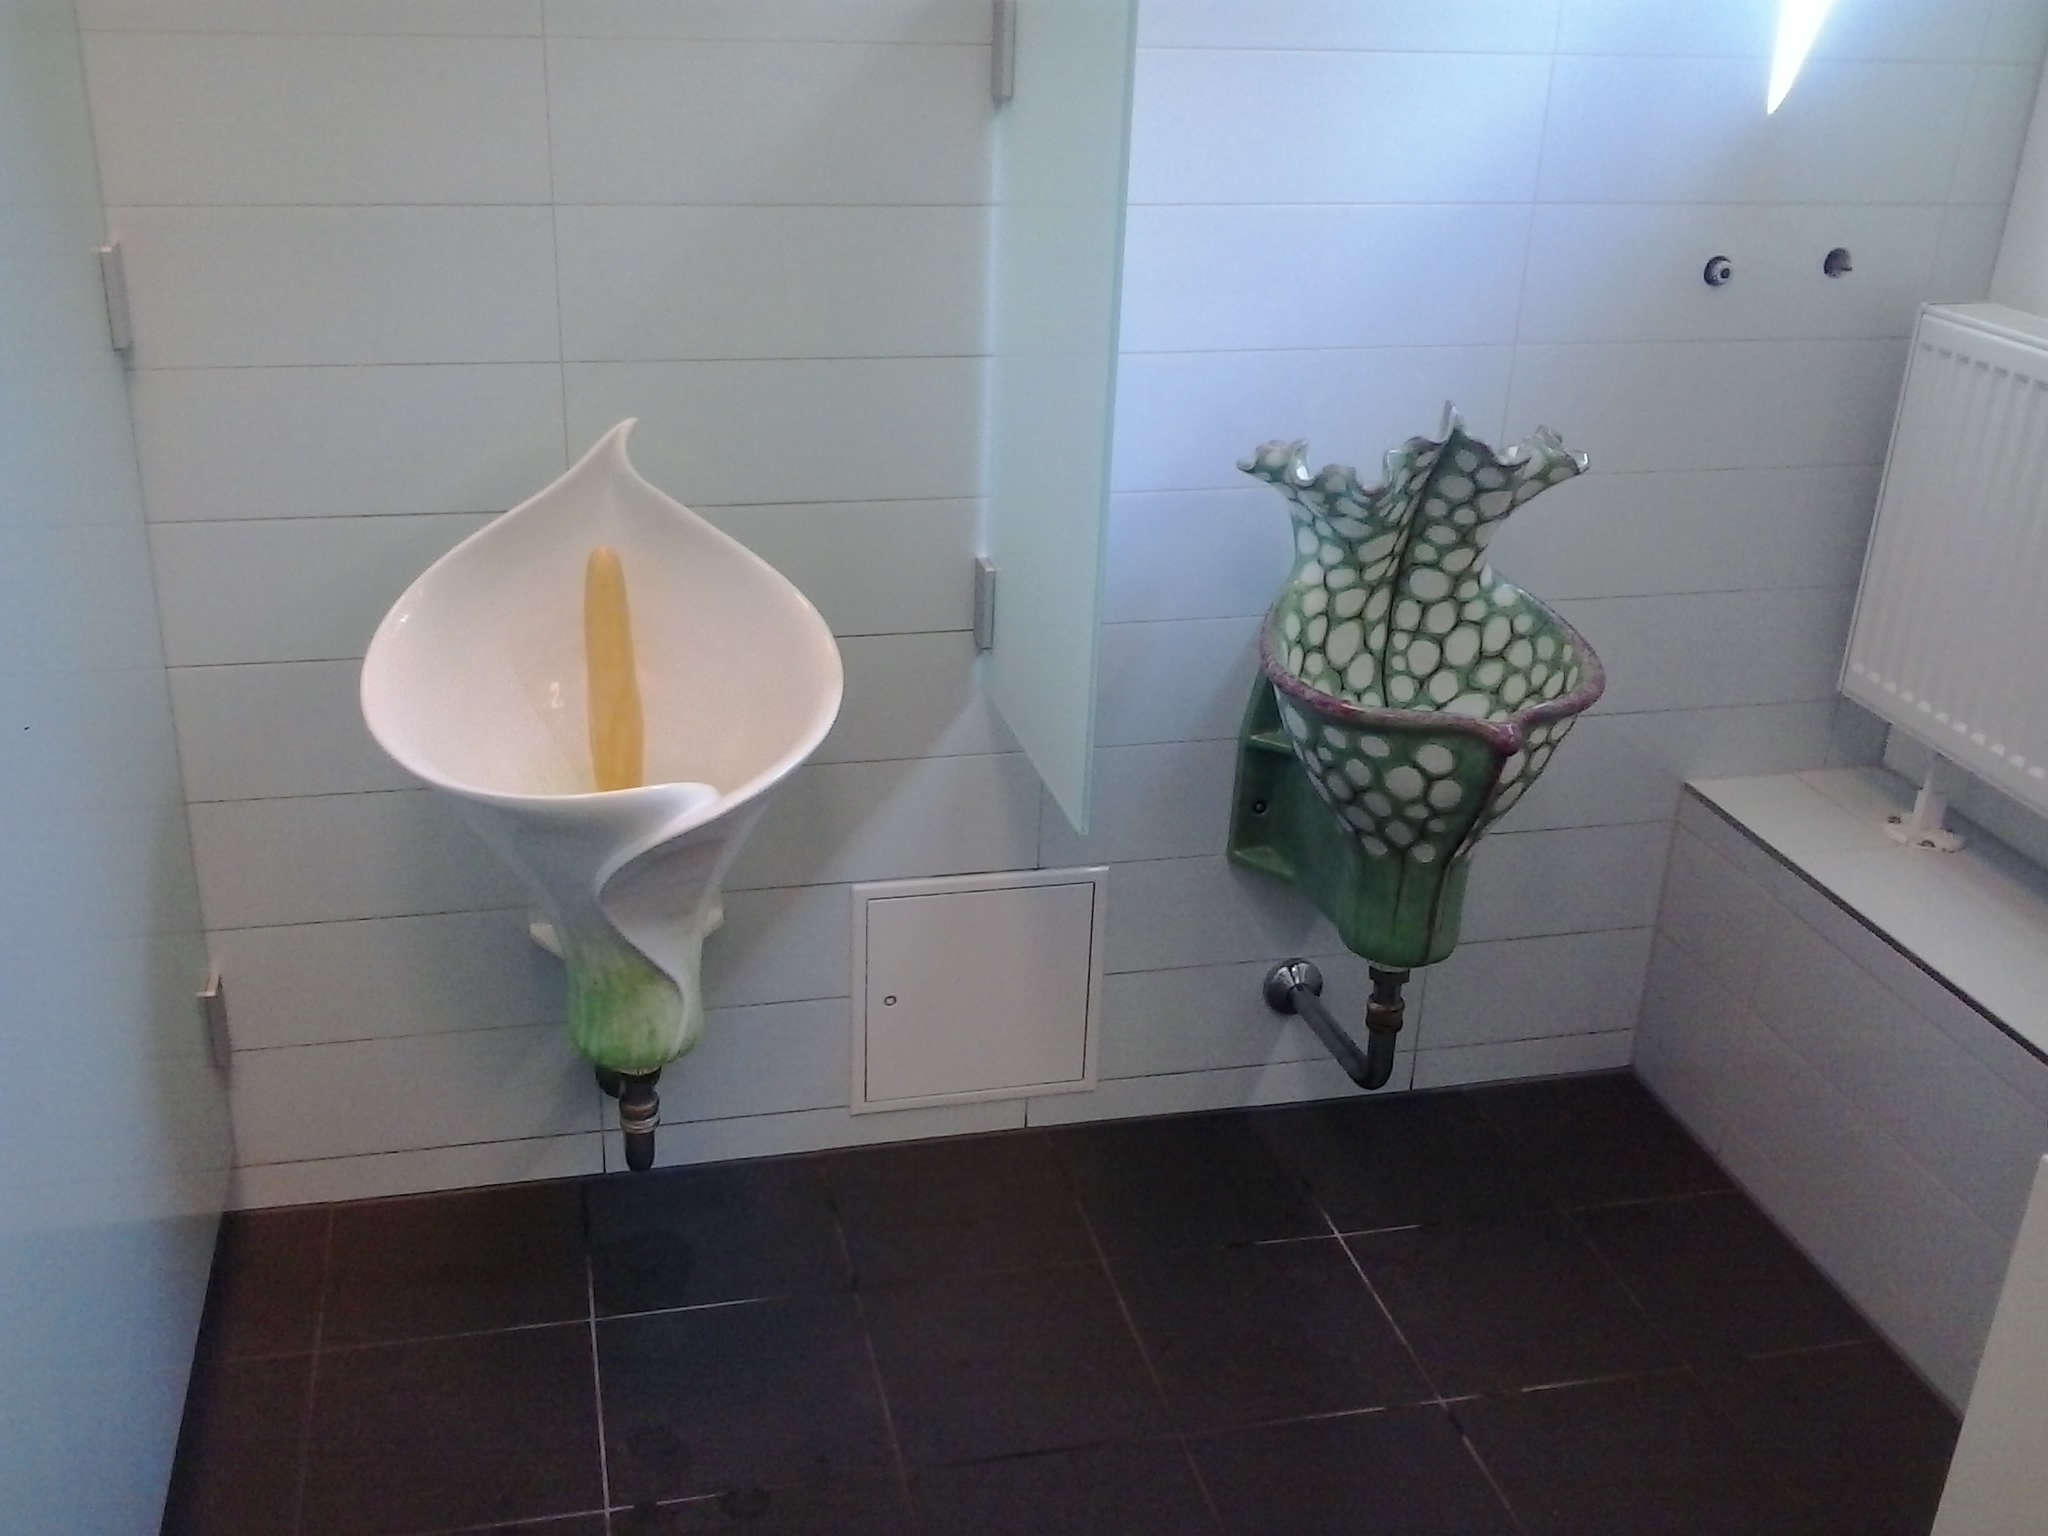 etwas andere Urinale auf dem Herren-WC